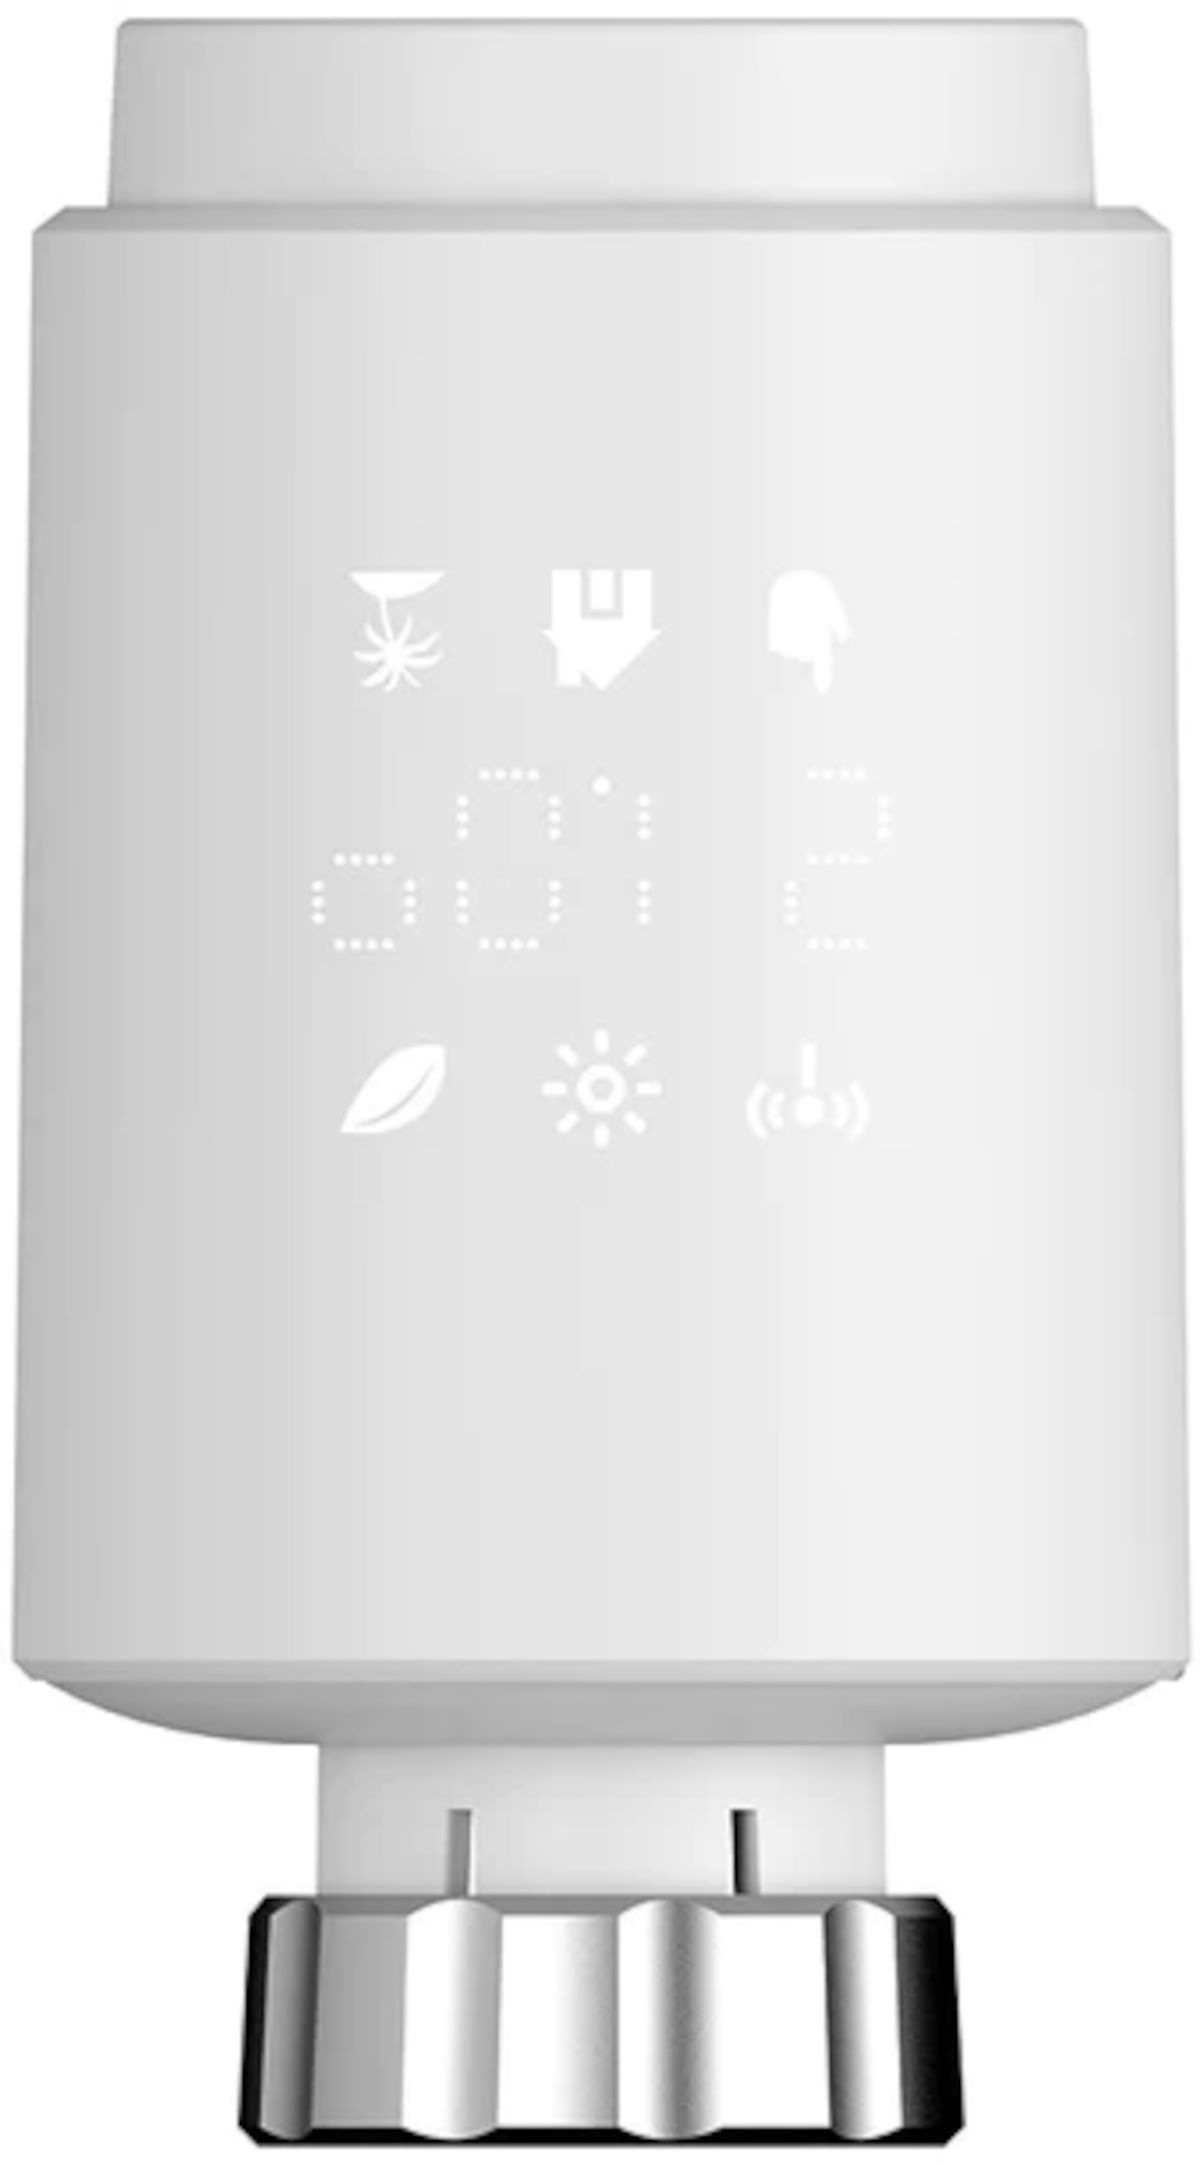 Wesmartify Smart Home Heizkörperthermostat Round, Draufsicht, vor weißem Hintergrund